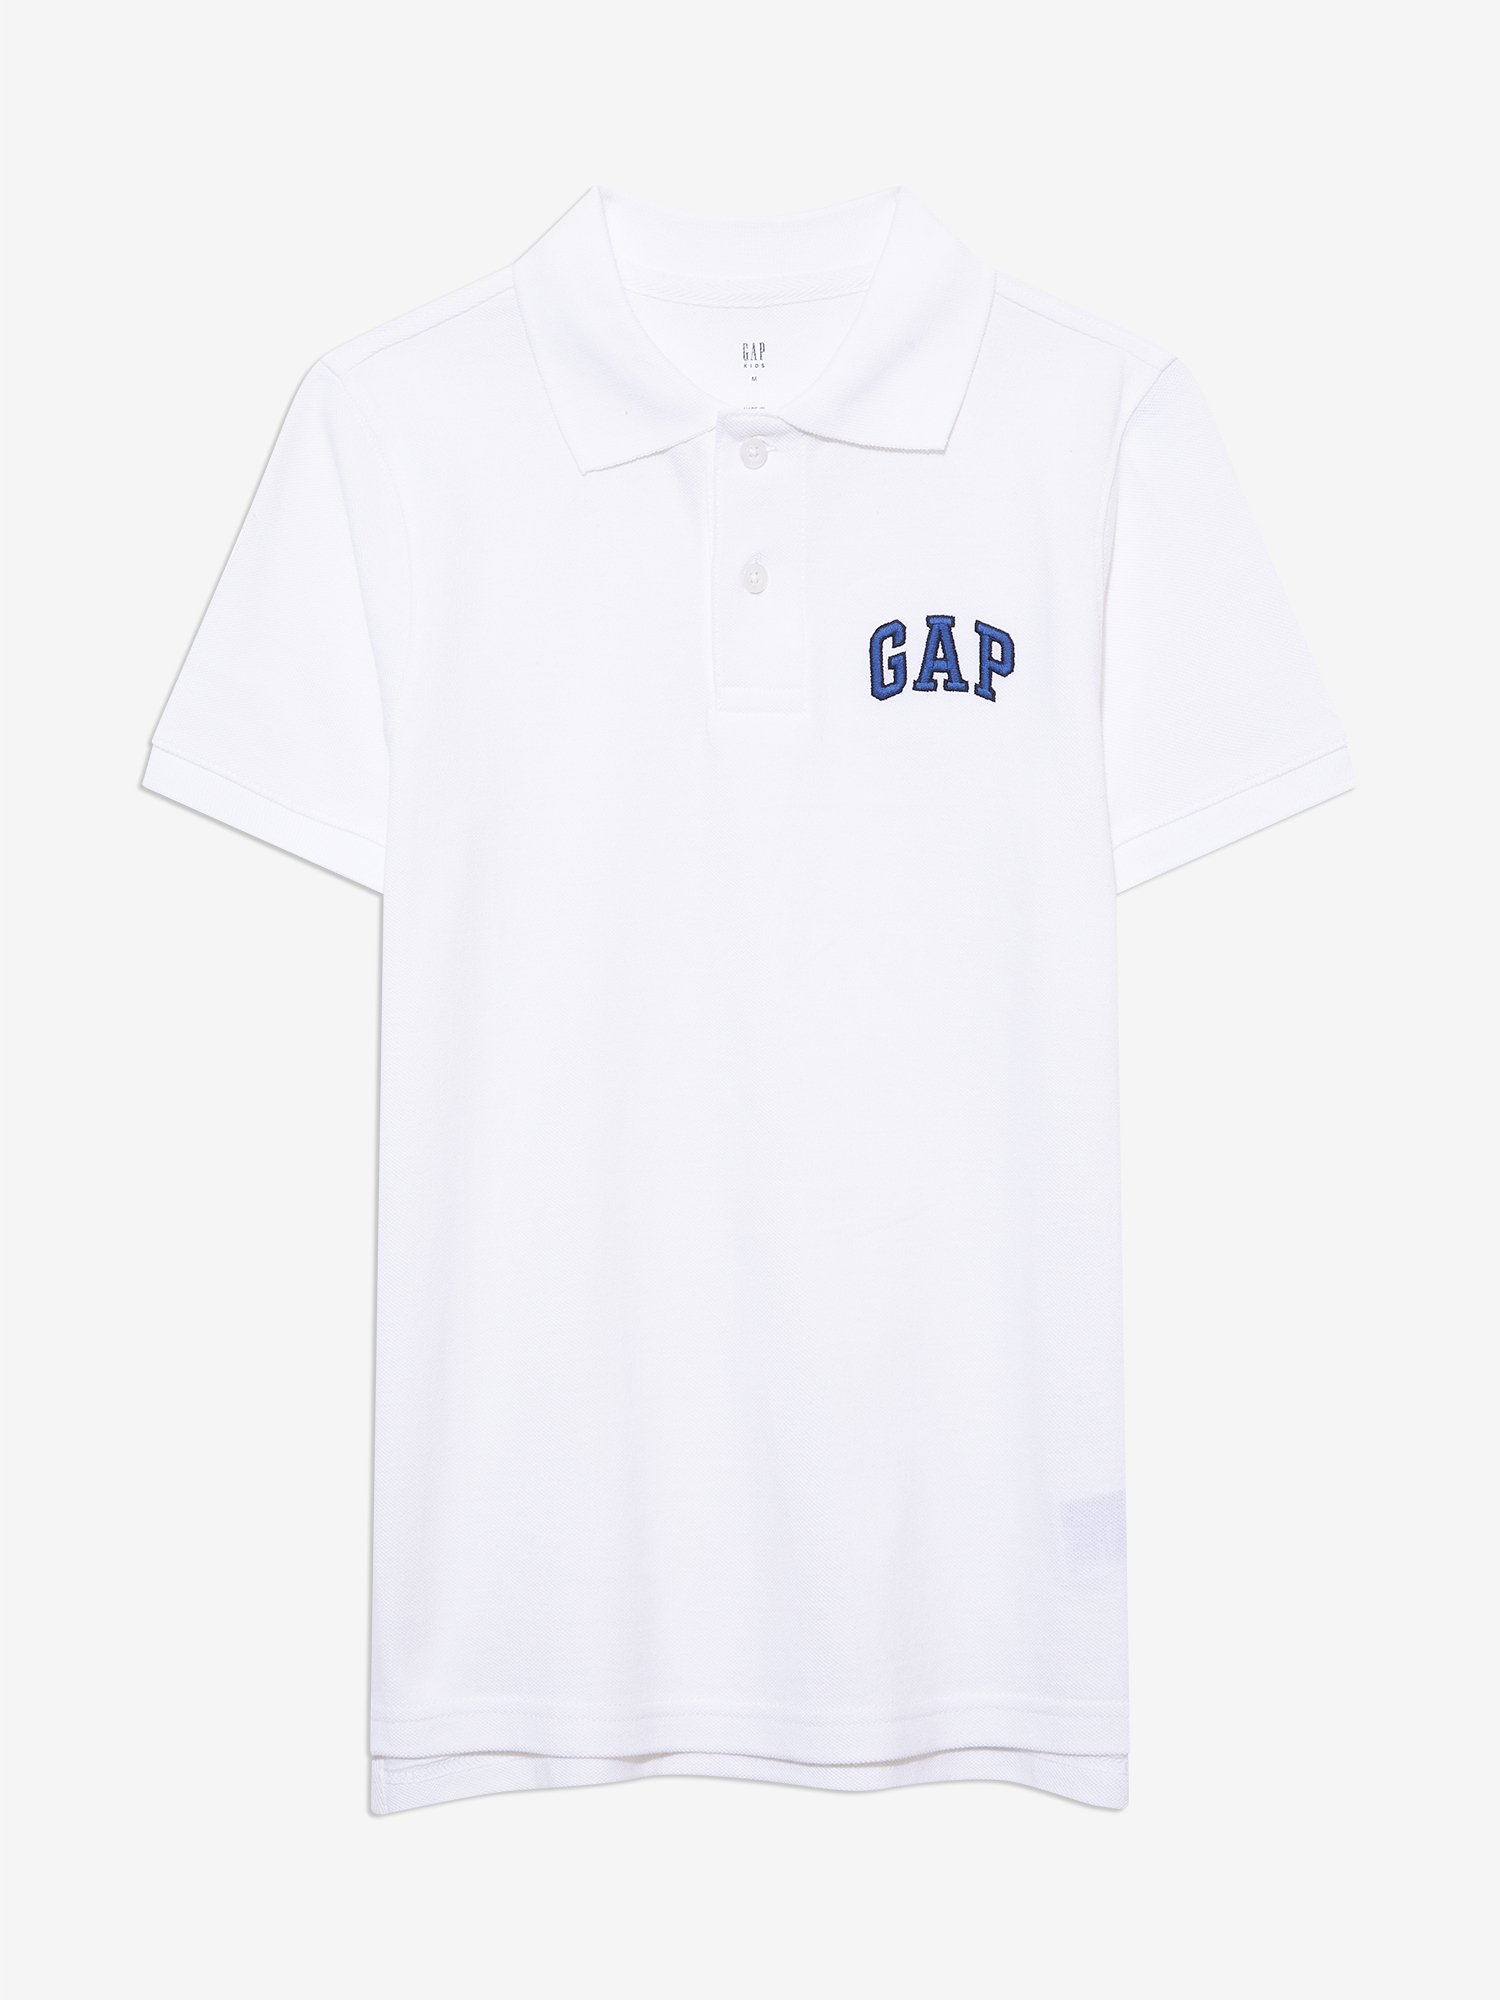 Gap Logo Polo Yaka T-Shirt product image